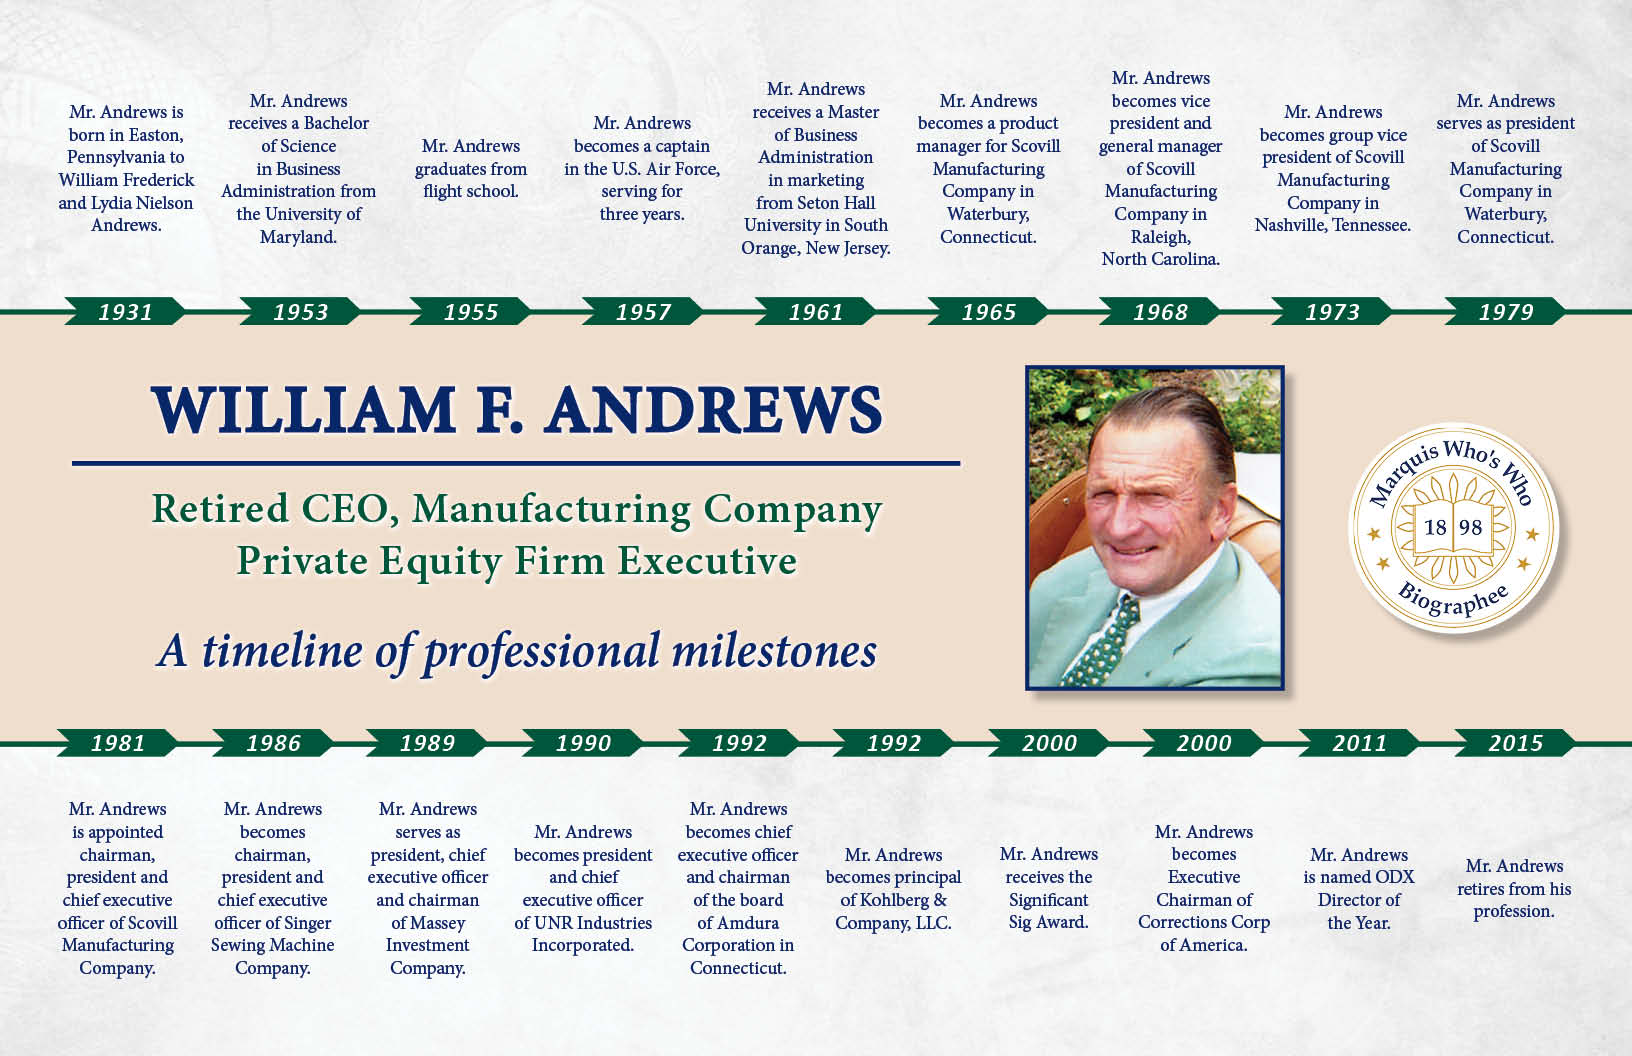 William Andrews Professional Milestones